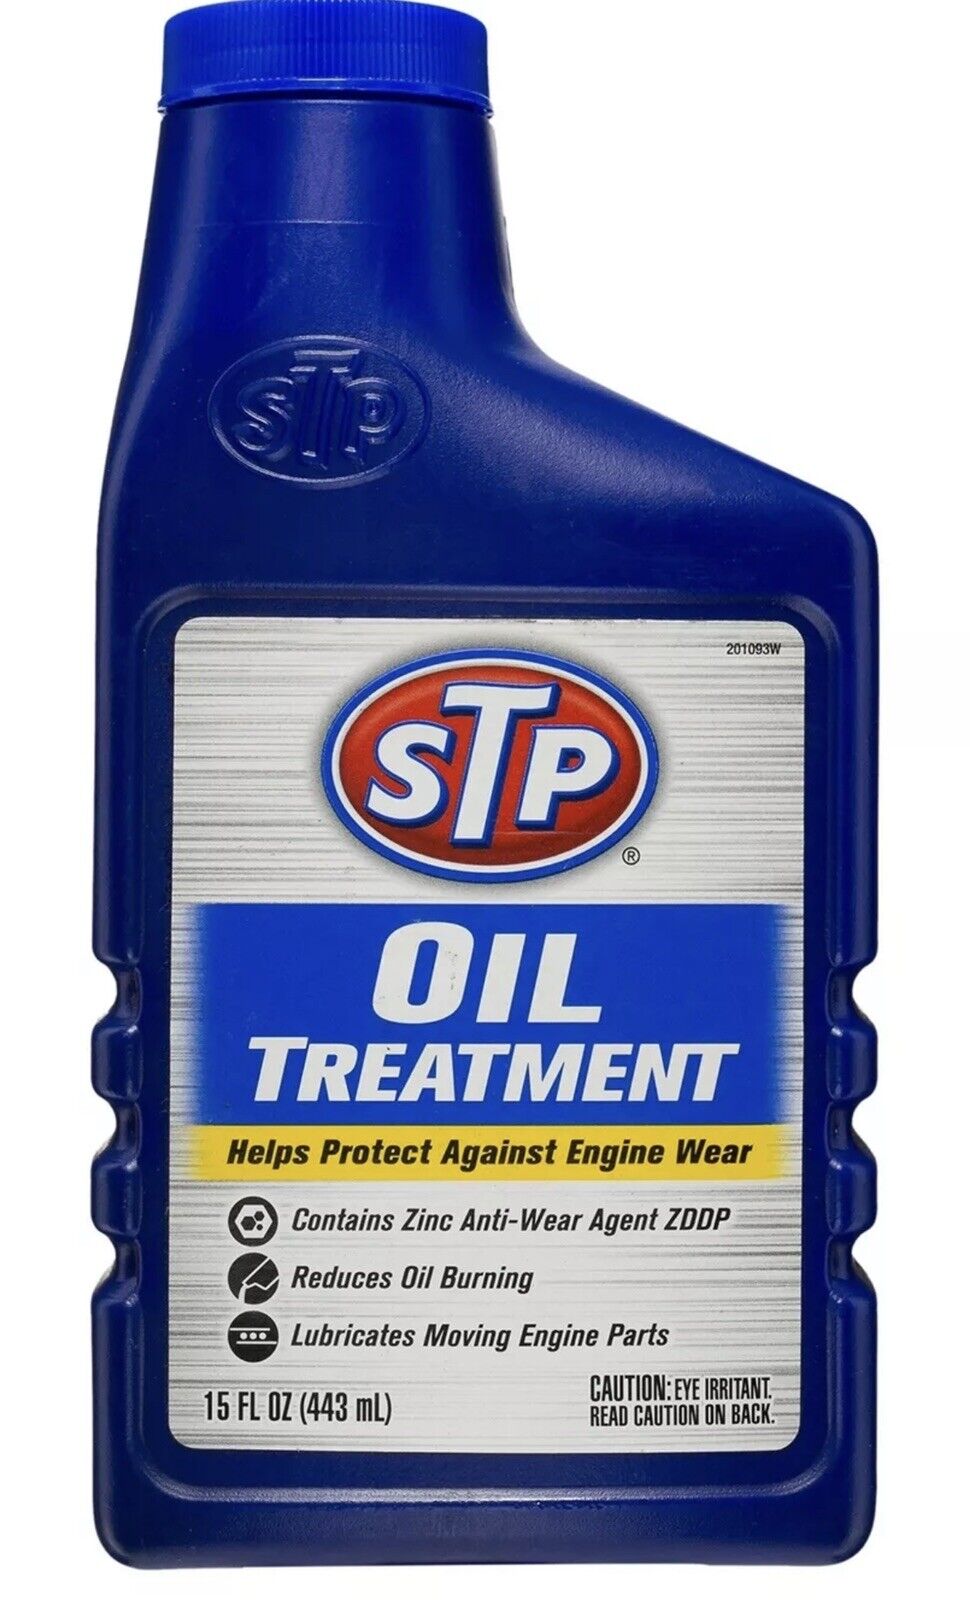 STP Oil Treatment (15 fluid ounces)